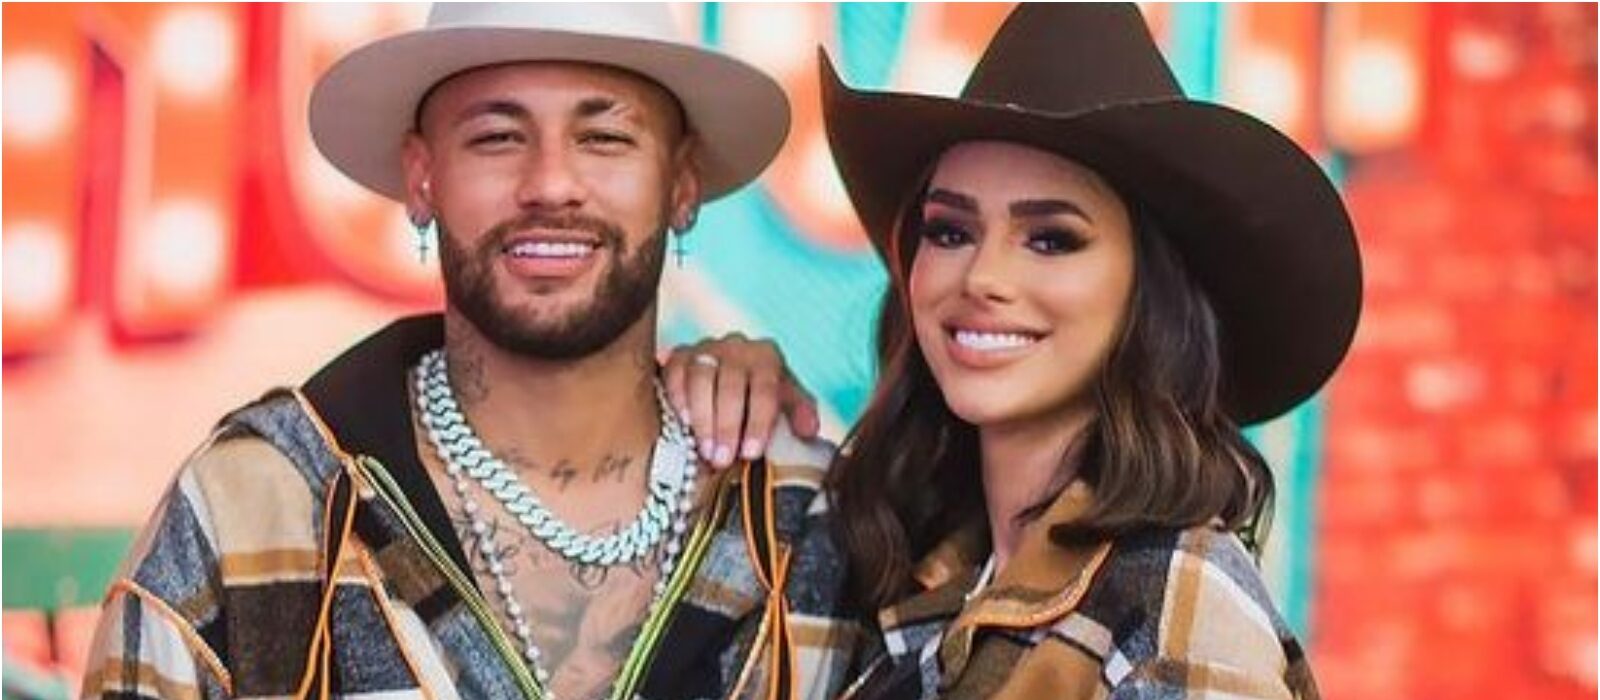 Bruna Biancardi confirma término com Neymar pelas redes sociais: ”não estou em um relacionamento”